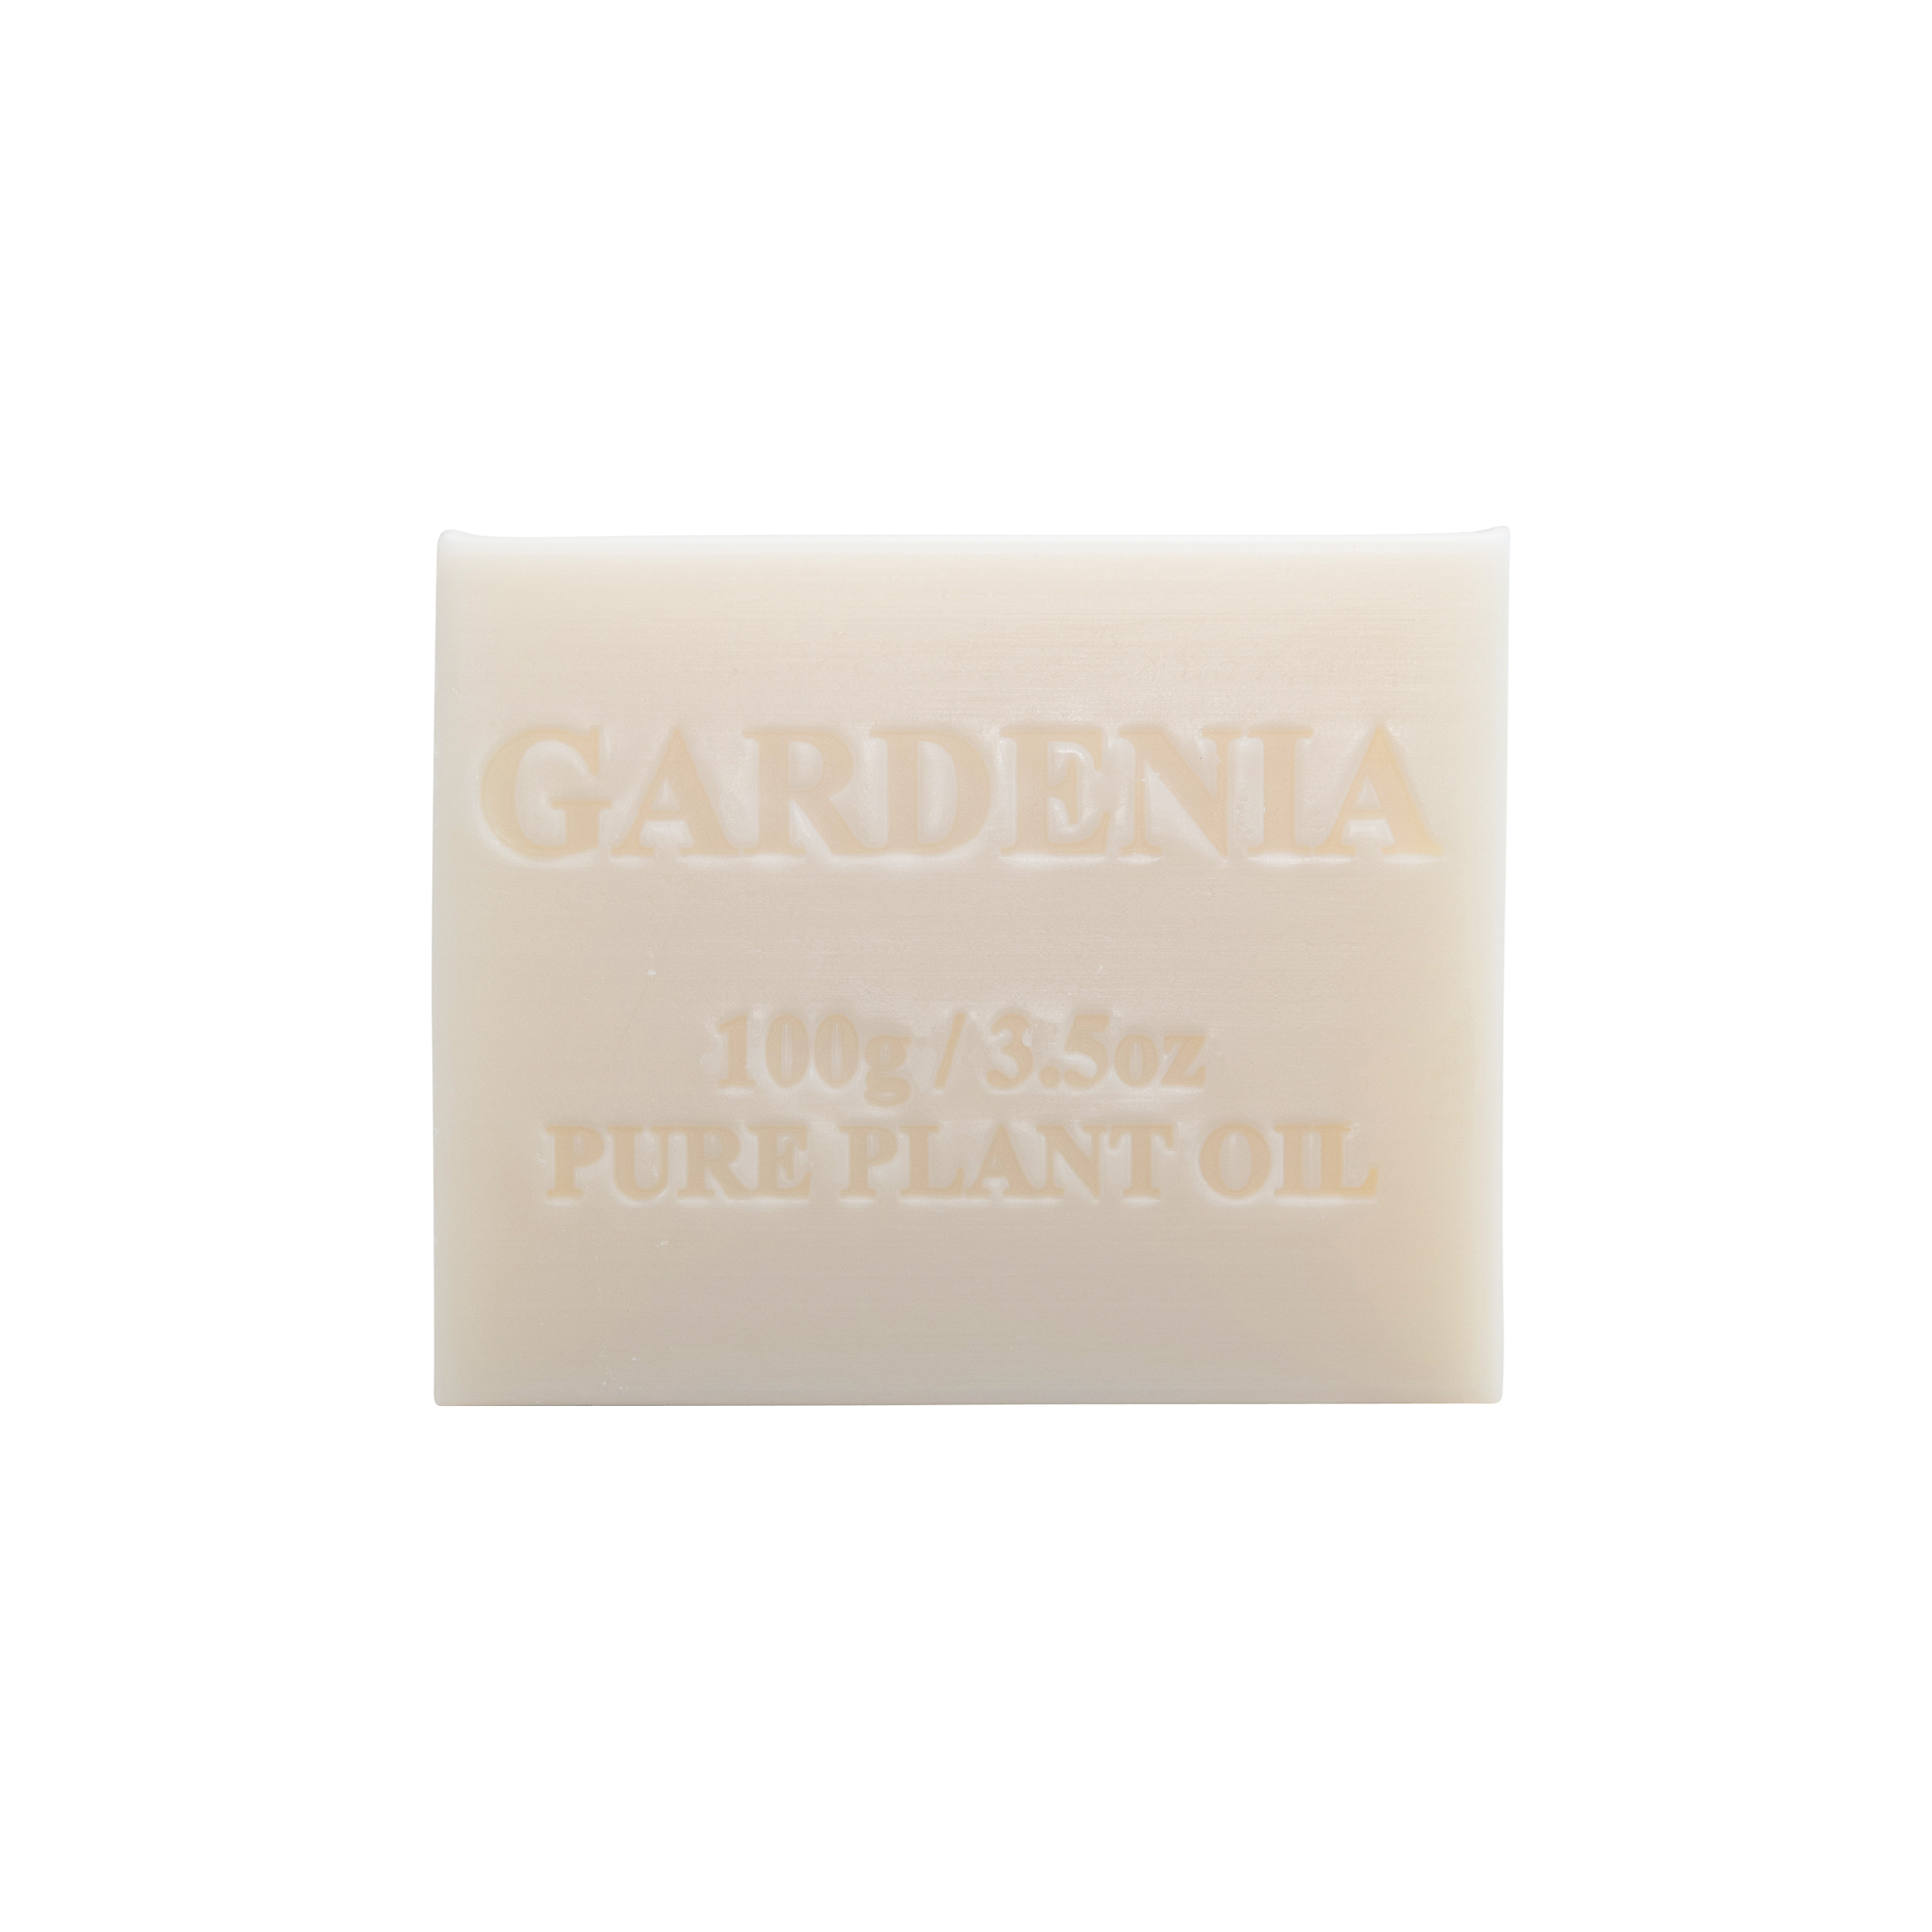 100g Gardenia Soap x100 Carton